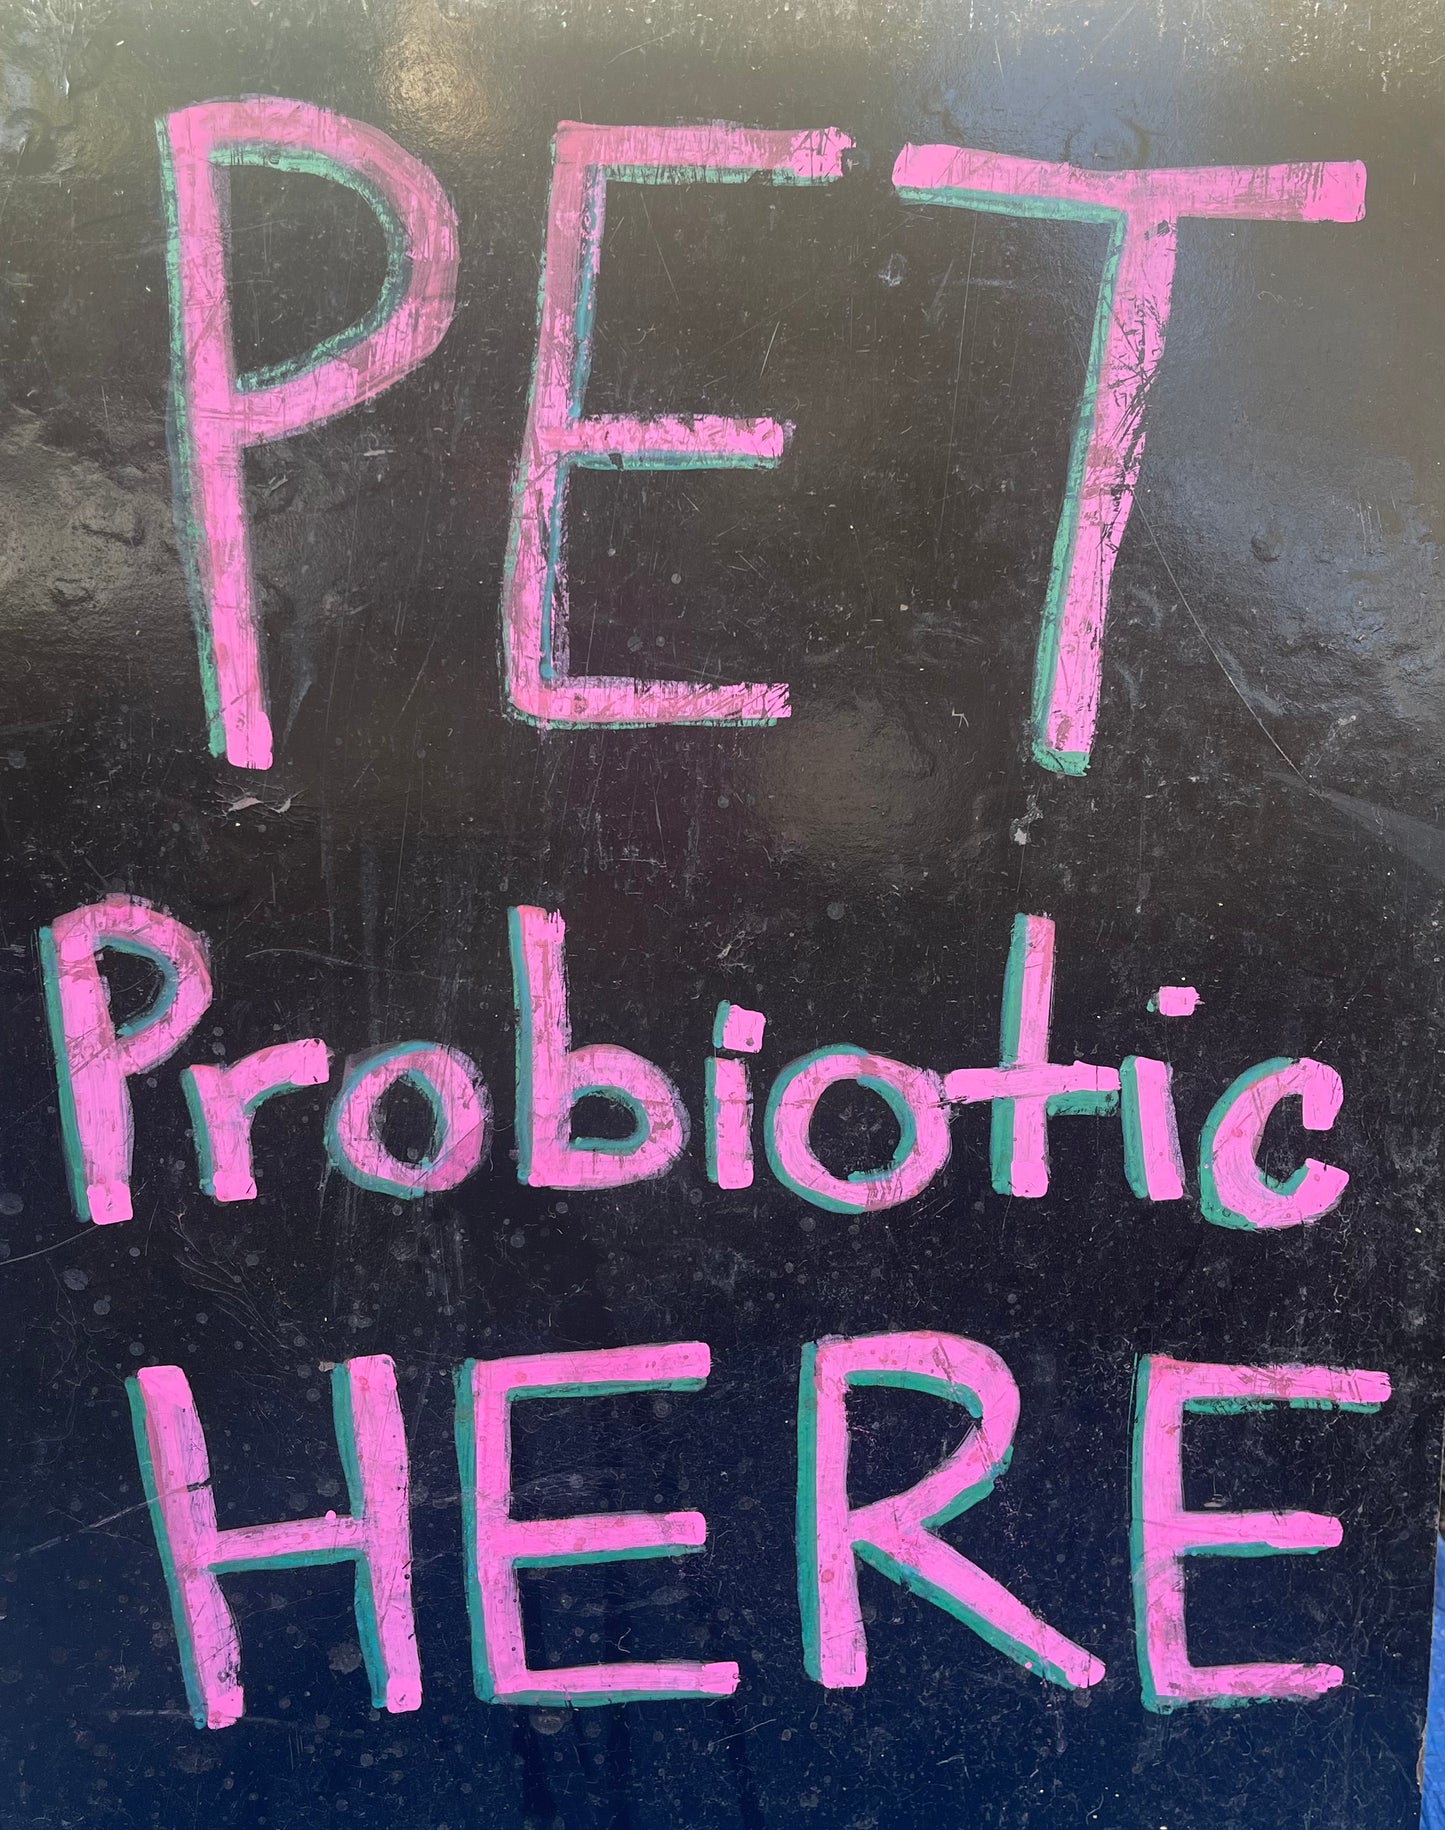 Pet Probiotics